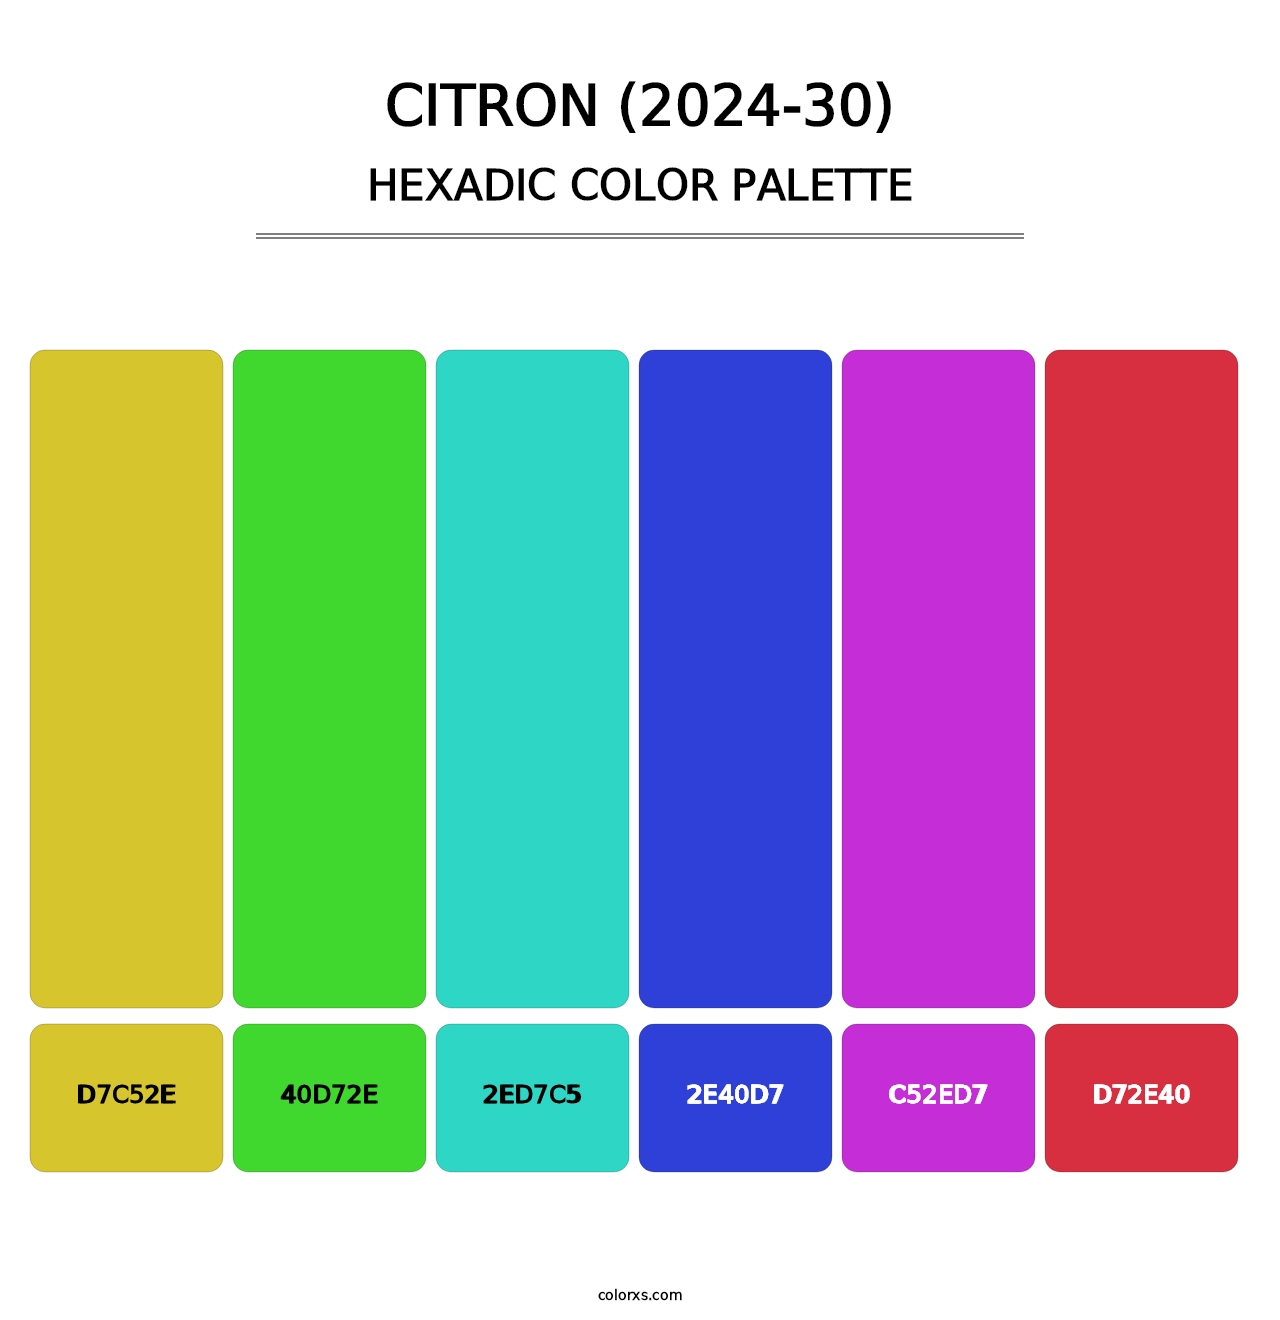 Citron (2024-30) - Hexadic Color Palette